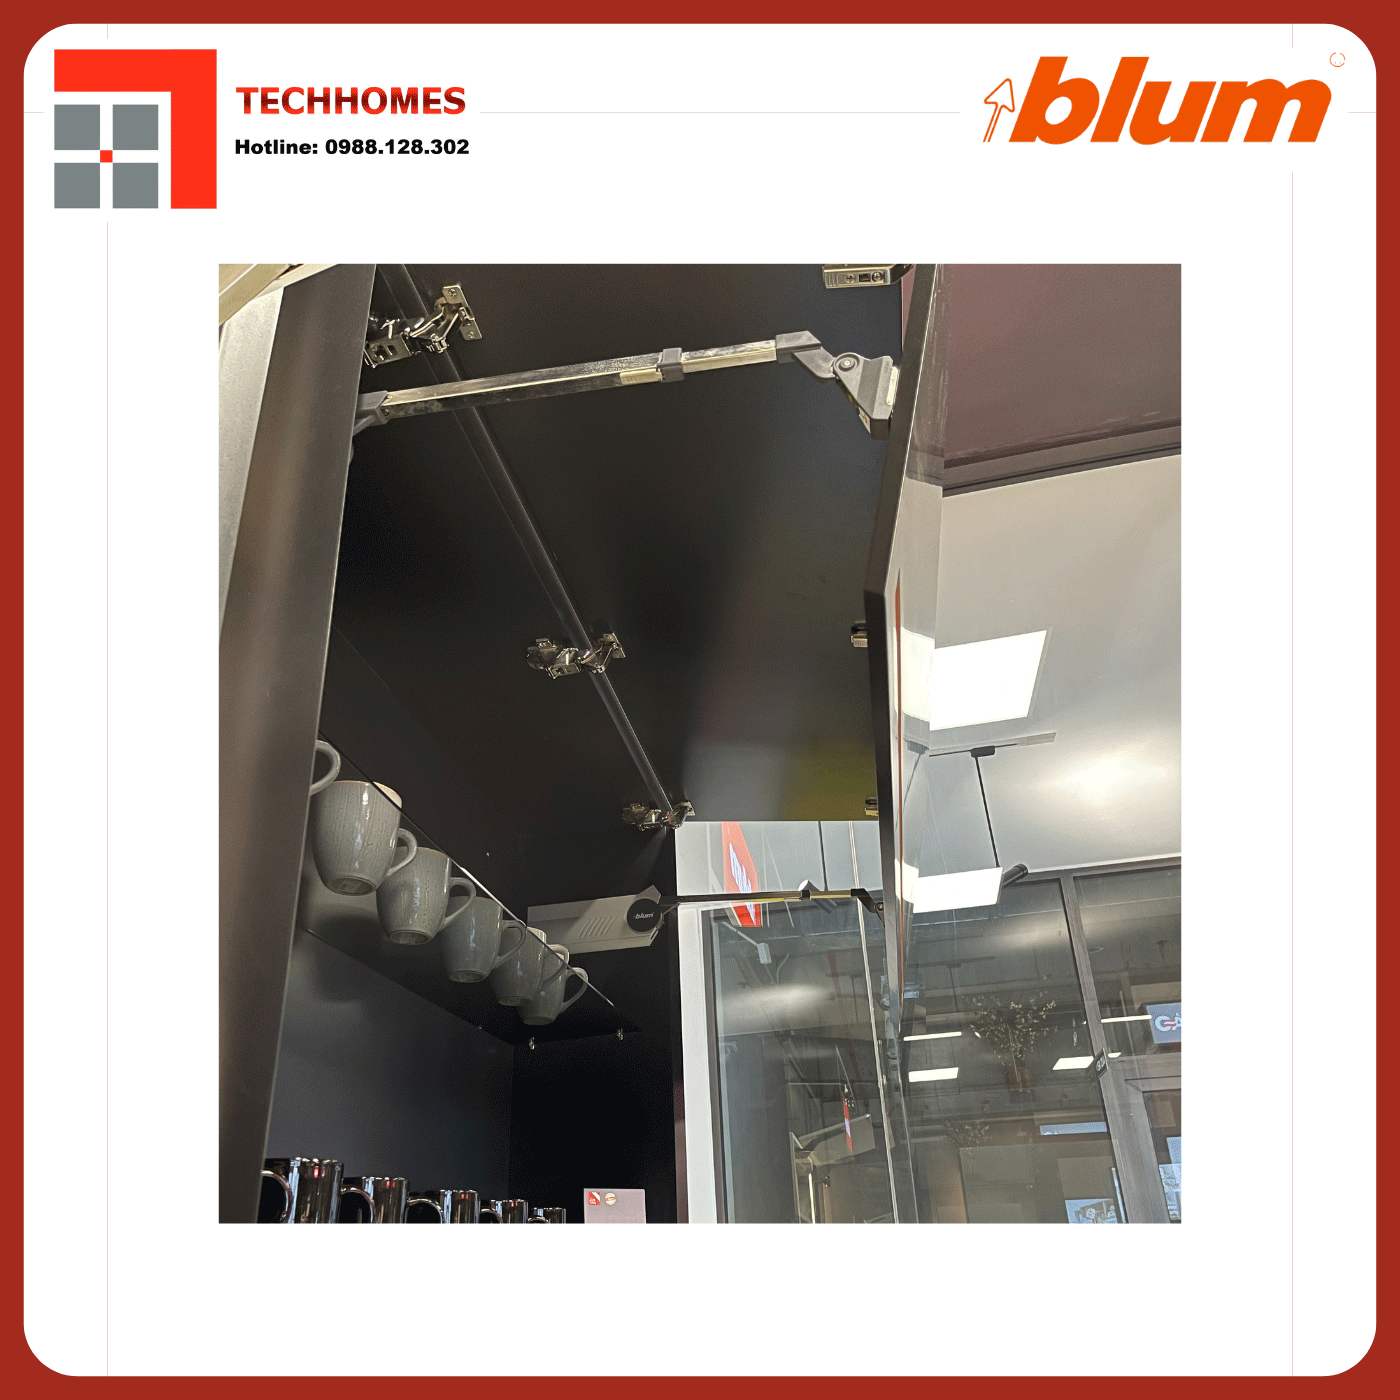 TAY NÂNG BLUM HF28 trọn bộ tay nâng Blum f28 nhập khẩu chính hãng Áo  - Blum f28